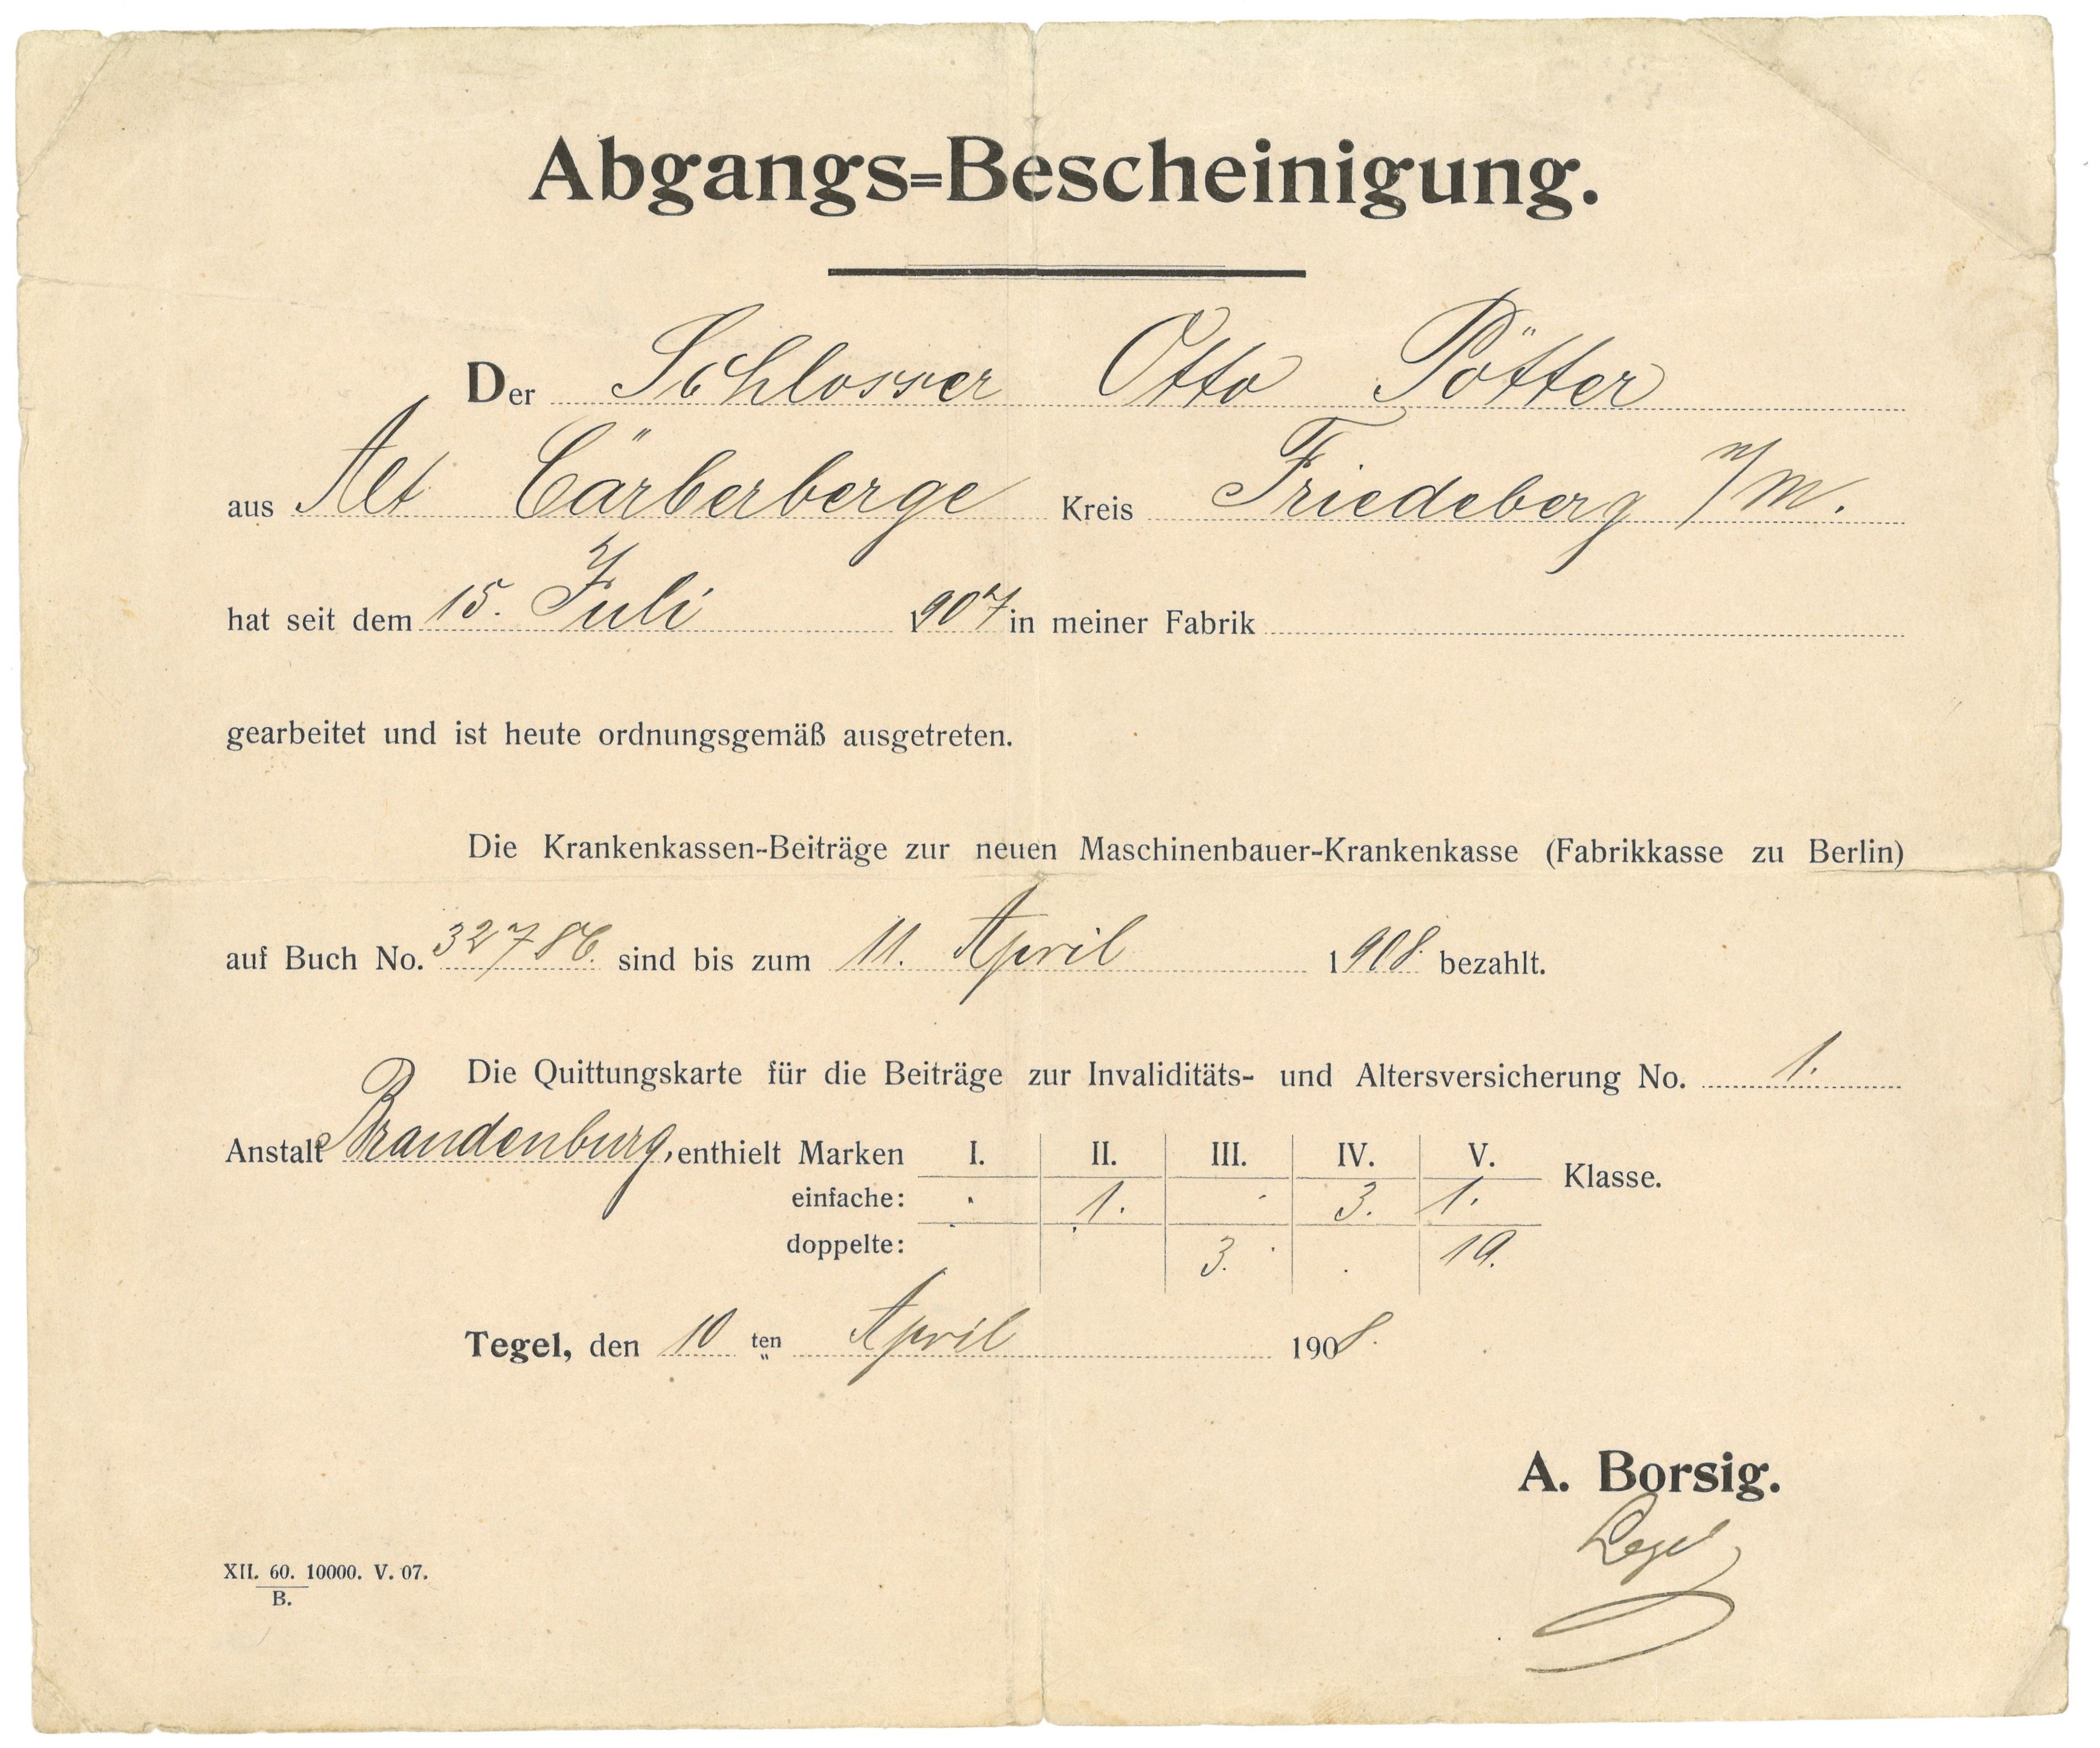 Abgangsbescheinigung der Firma Borsig in (Berlin-)Tegel für den Schlosser Otto Pötter 1908 (Landesgeschichtliche Vereinigung für die Mark Brandenburg e.V., Archiv CC BY)